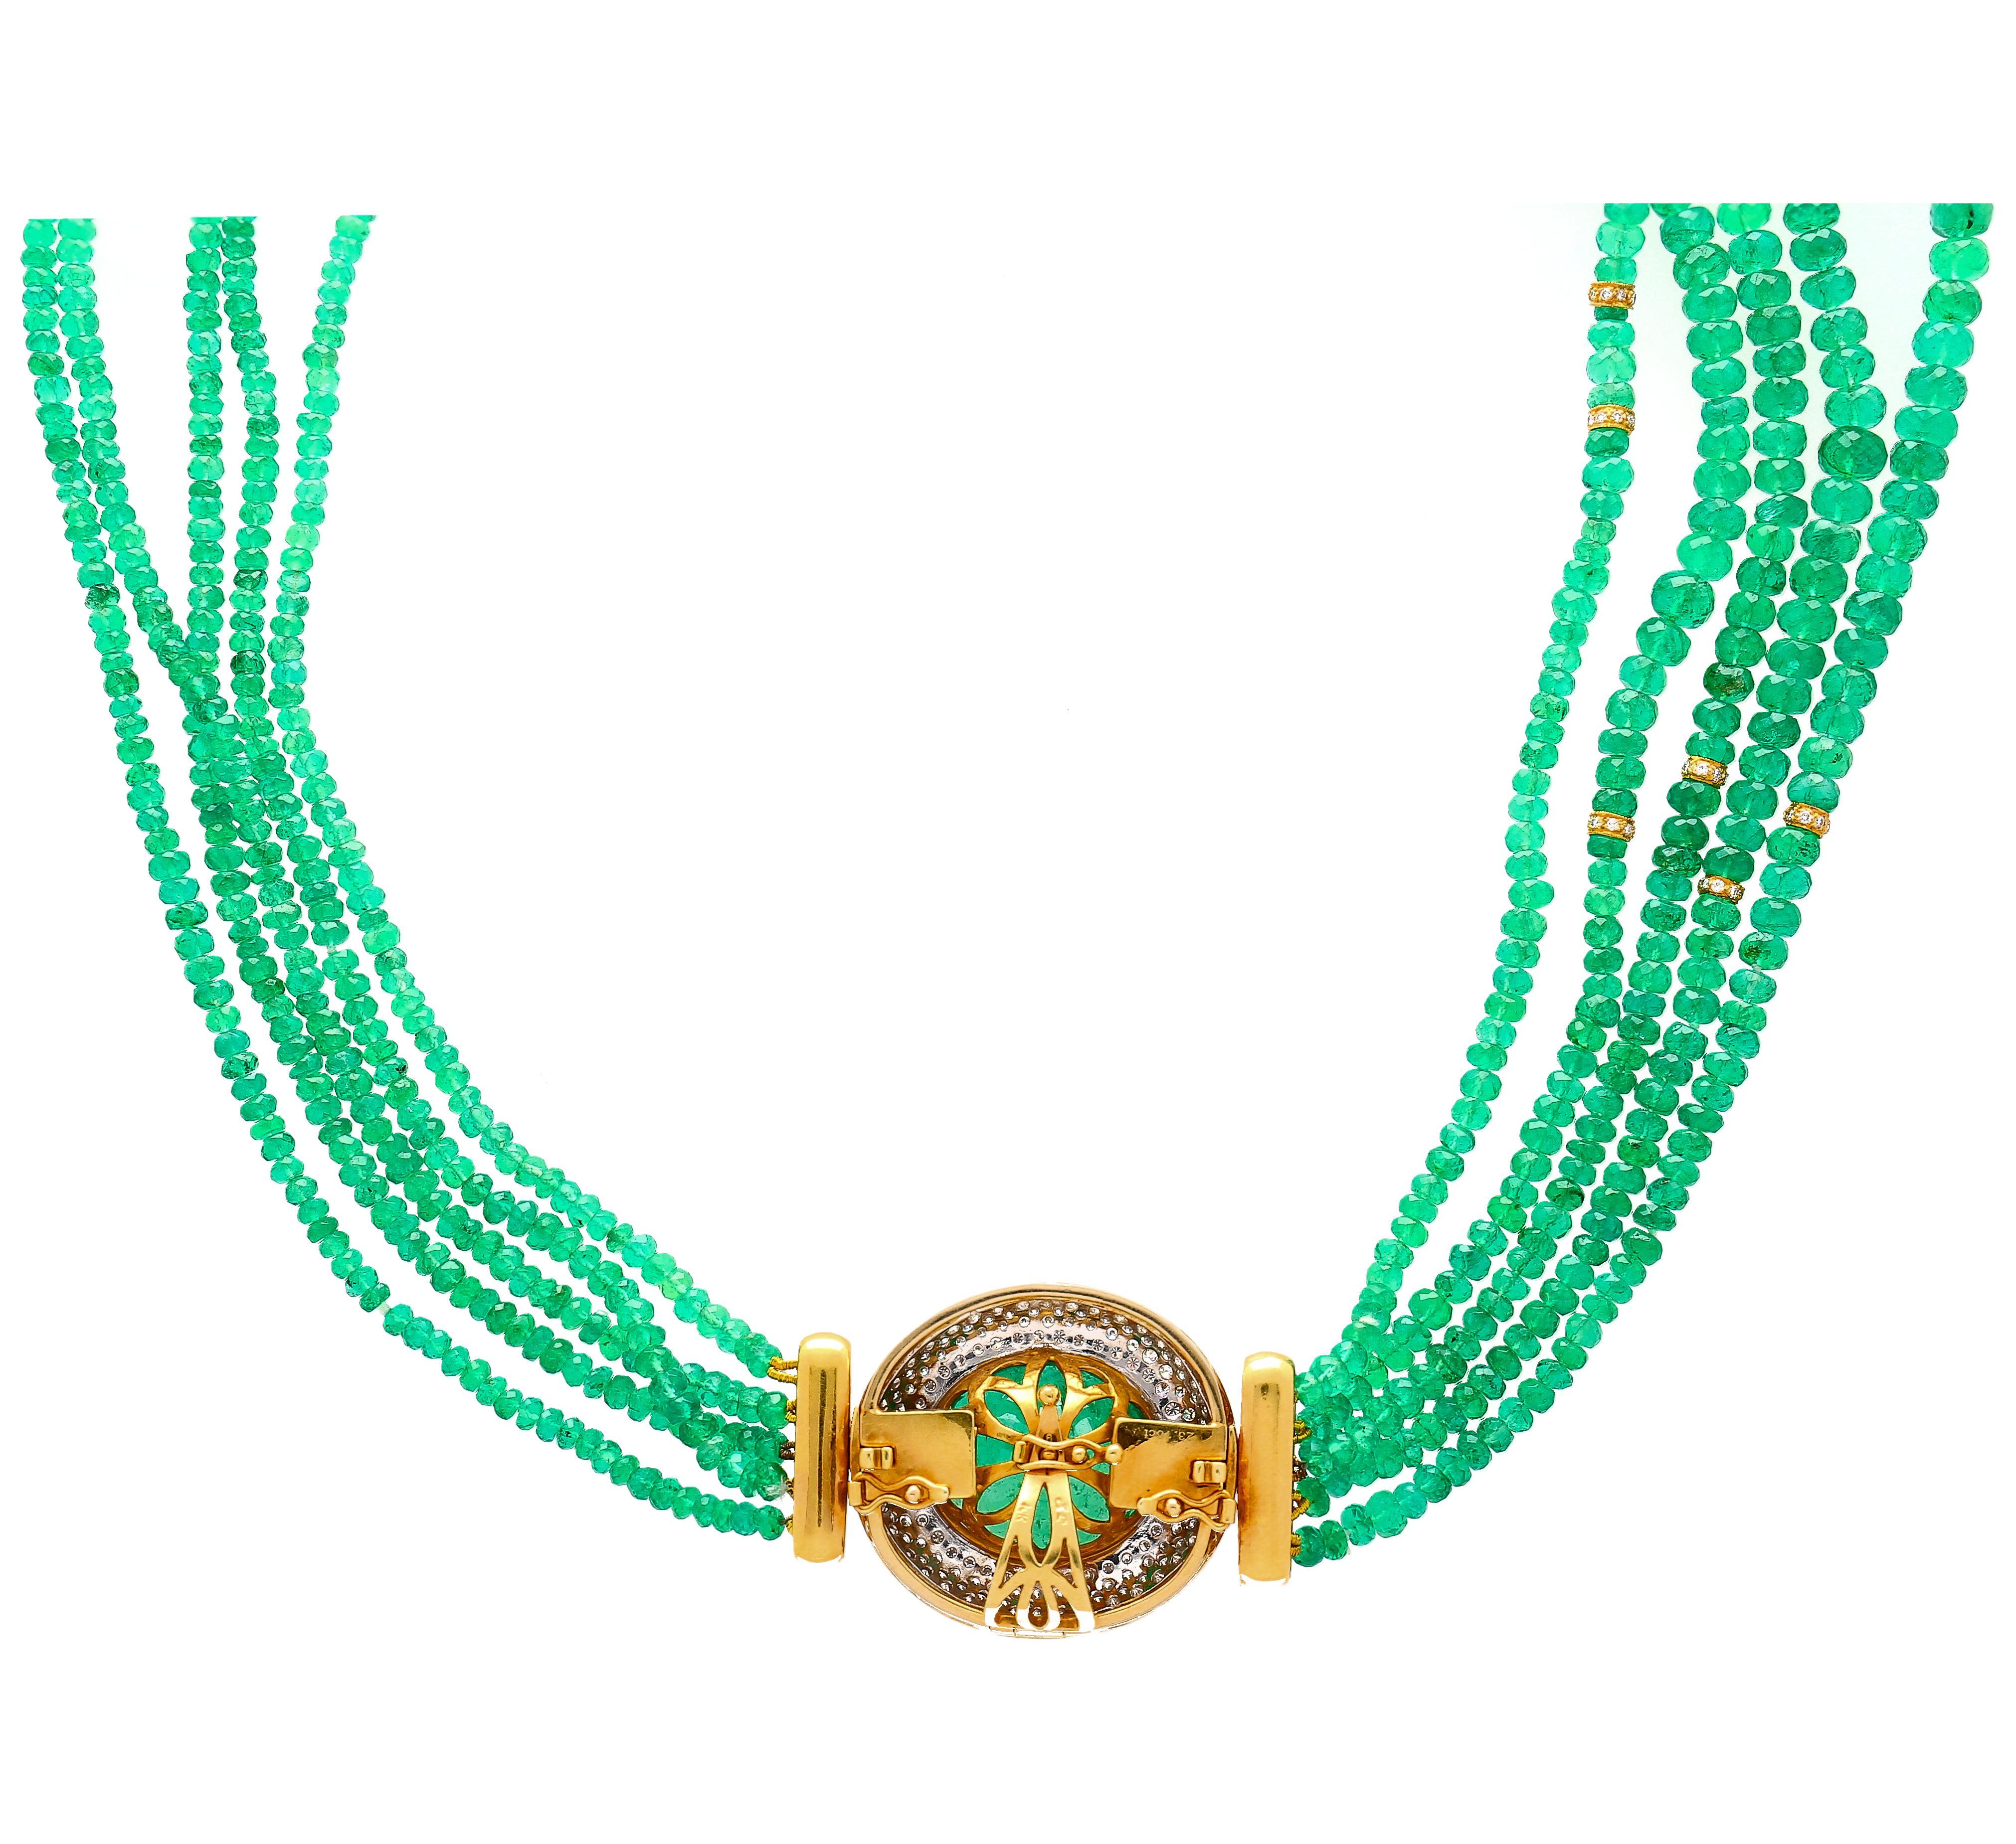 Retro-Vintage-Halskette mit Smaragd und Diamanten im Ovalschliff. Fassung aus 18 Karat Gelbgold. Das Collier besteht aus 234 oval geschliffenen Diamanten und ca. 3,5 mm großen Smaragdperlen, die ein 22 Zoll langes Luxuscollier bilden. Der Smaragd in